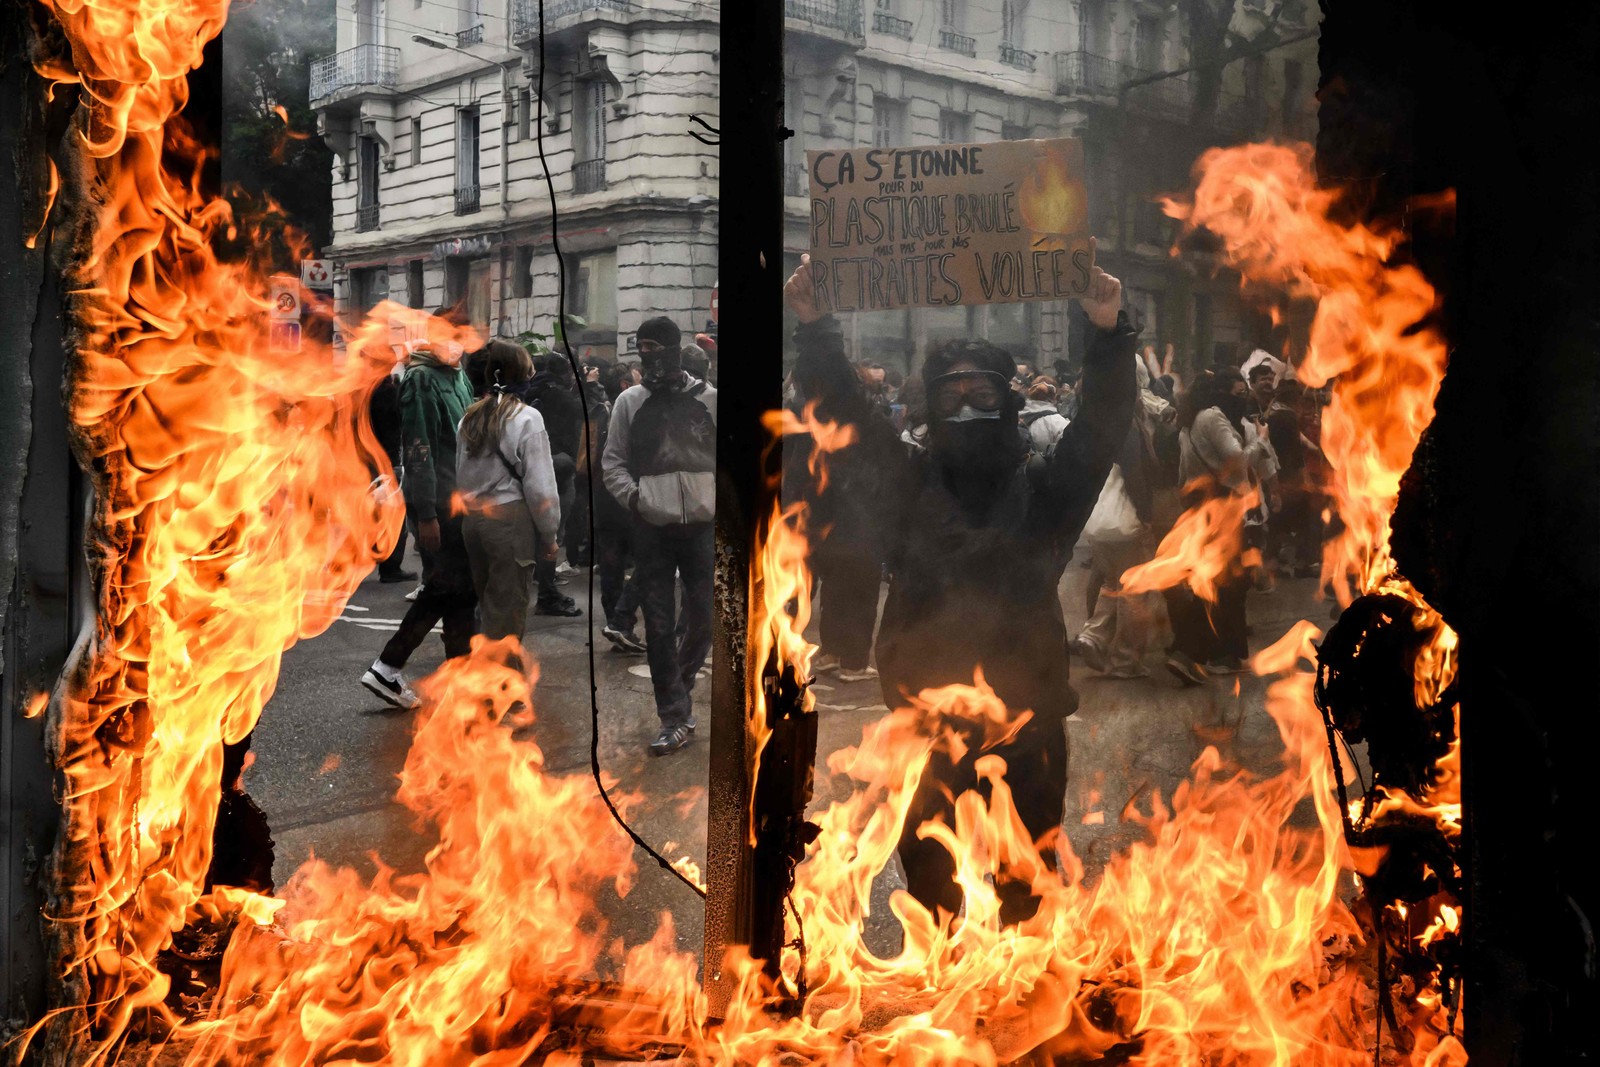 Manifestante é visto através de uma vitrine em chamas durante ato marcado por confrontos em Lyon — Foto: JEFF PACHOUD / AFP